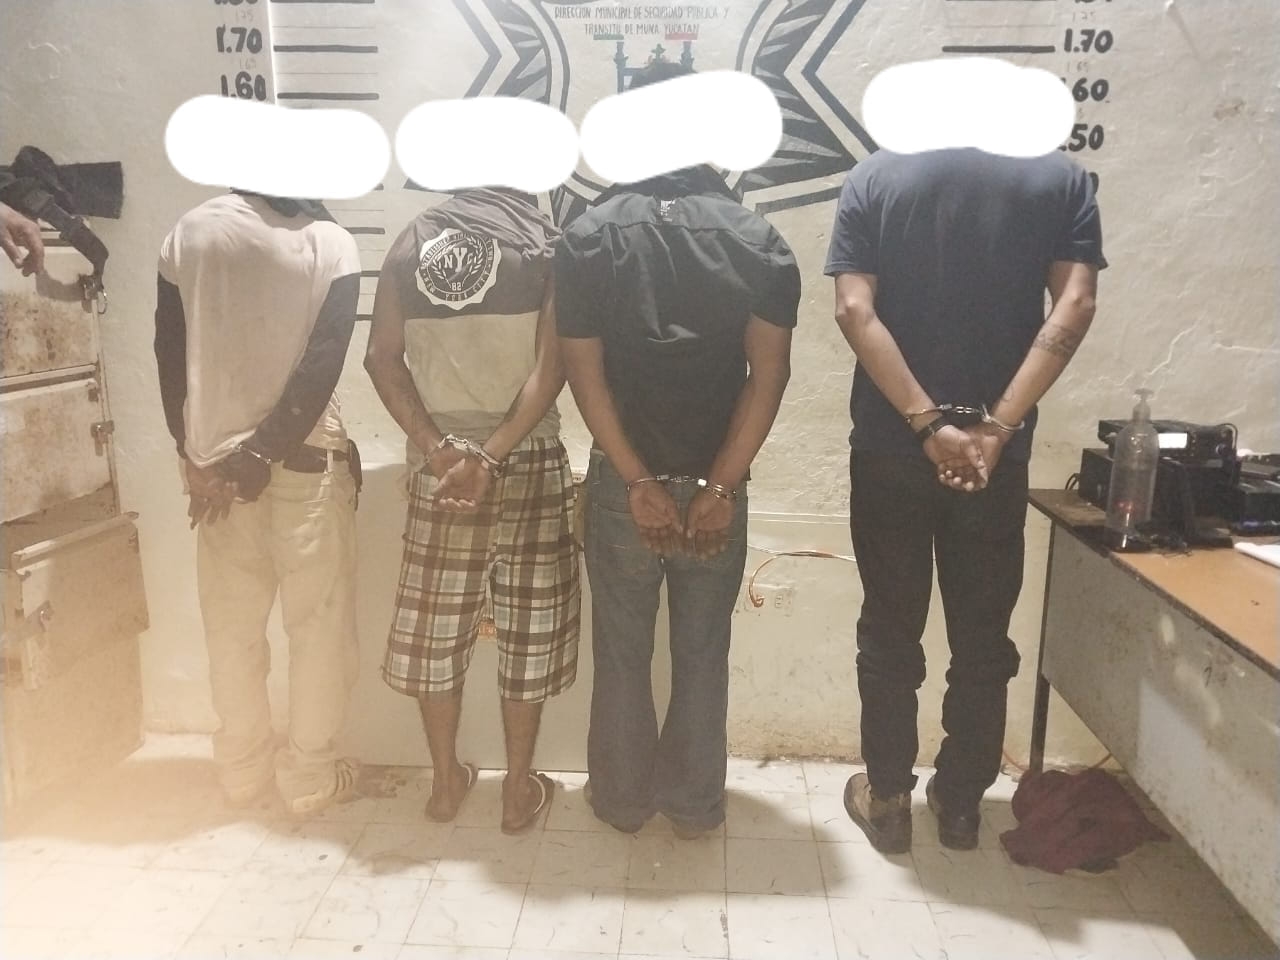 Los 4 hombres fueron detenidos por la Policía de Muna